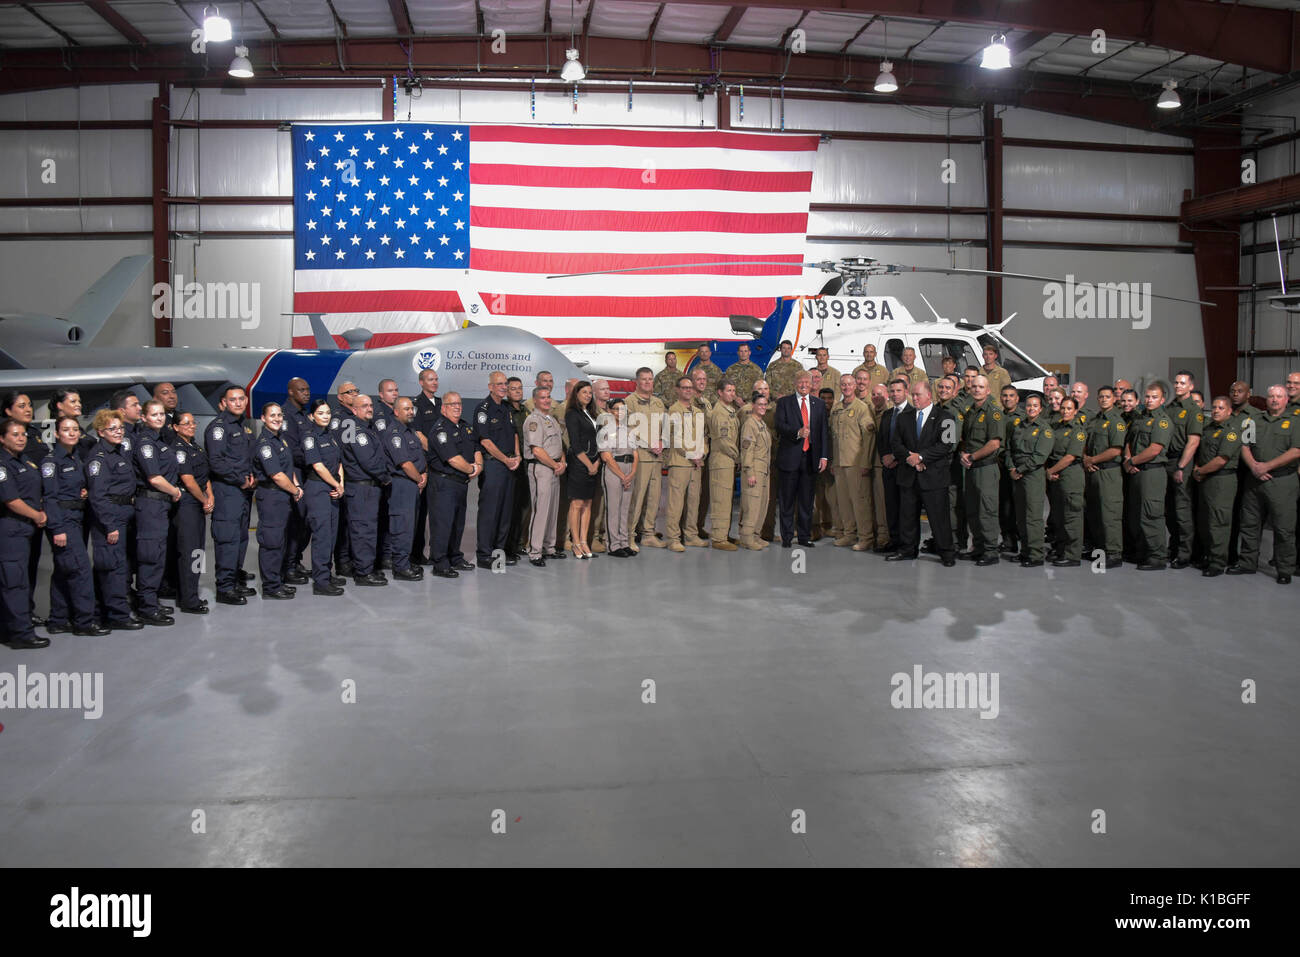 Le Président américain Donald Trump pose pour une photo de groupe avec le U.S. Customs and Border Protection et agents de glace au cours d'une visite à la Station Yuma Border Patrol, 22 août 2017 à Yuma, Arizona. Banque D'Images